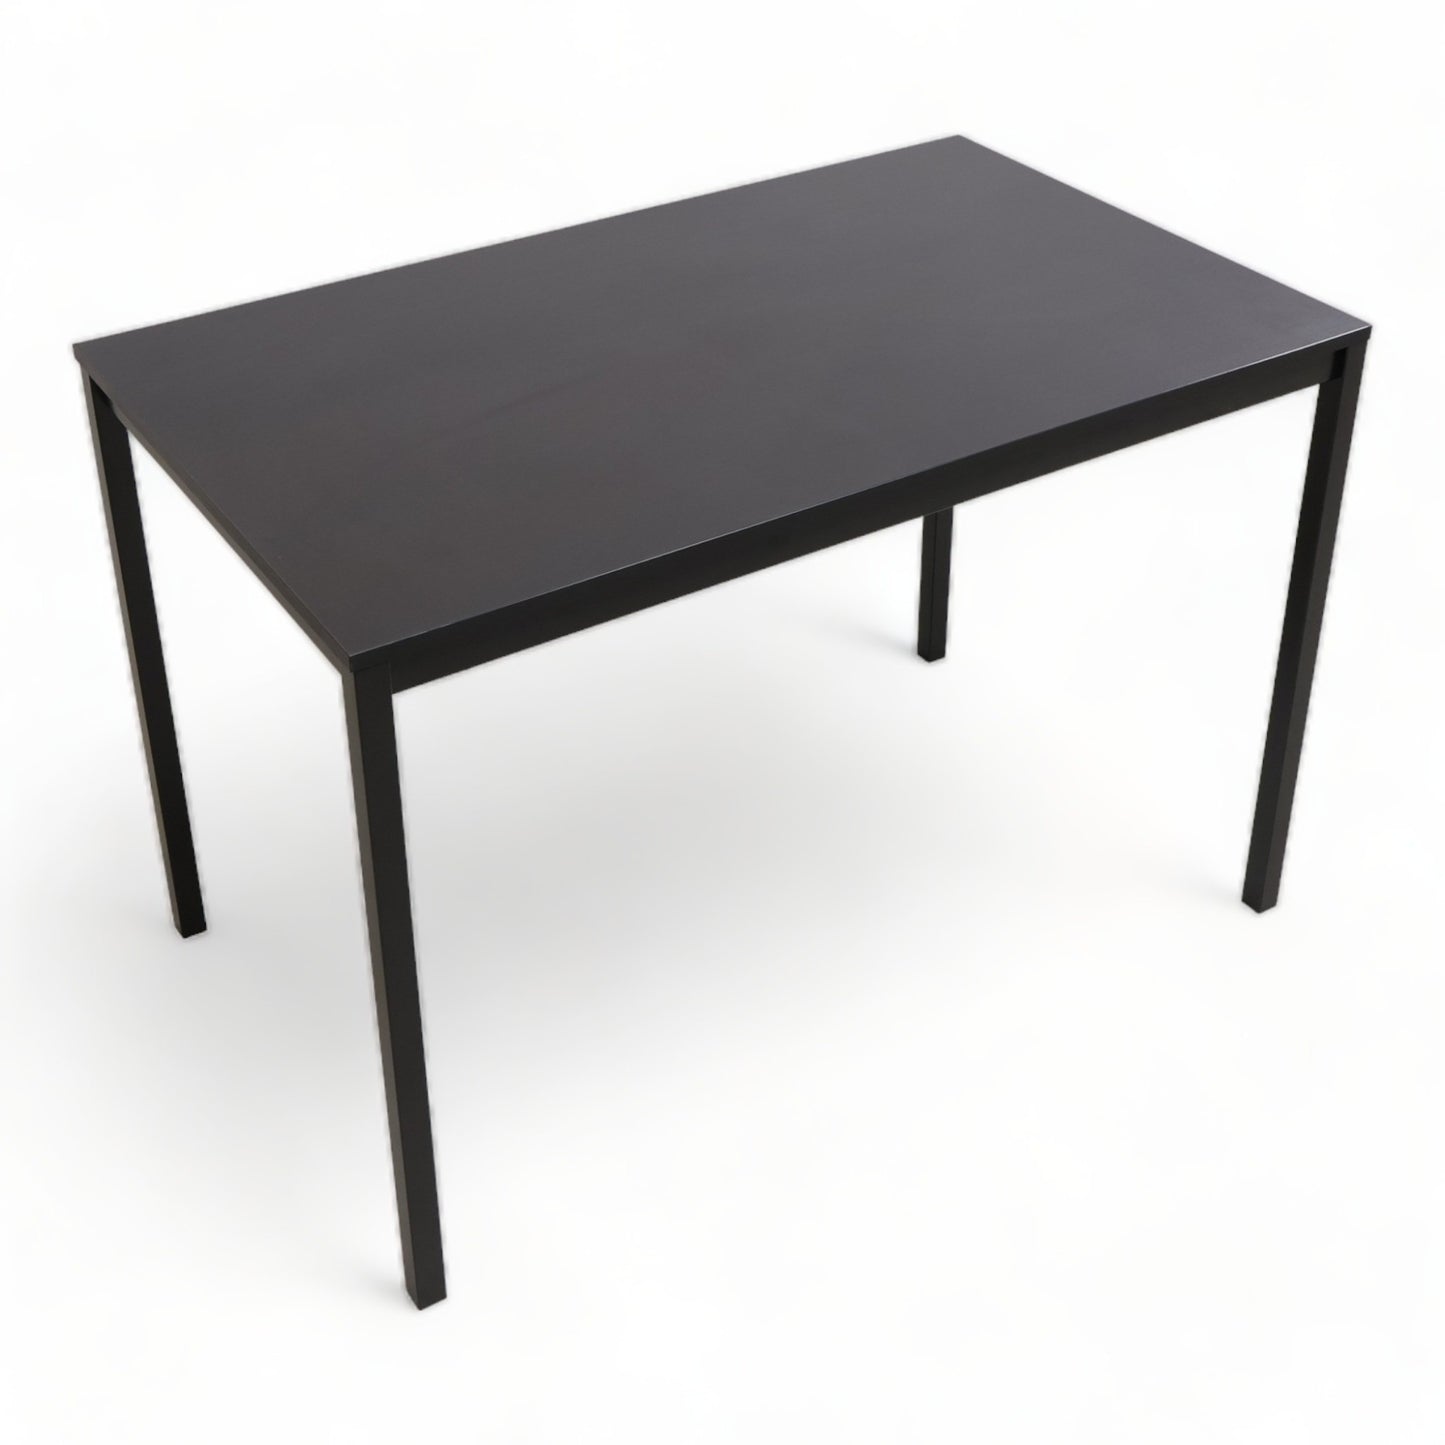 Kvalitetssikret | IKEA Tärendö helsort skrivebord